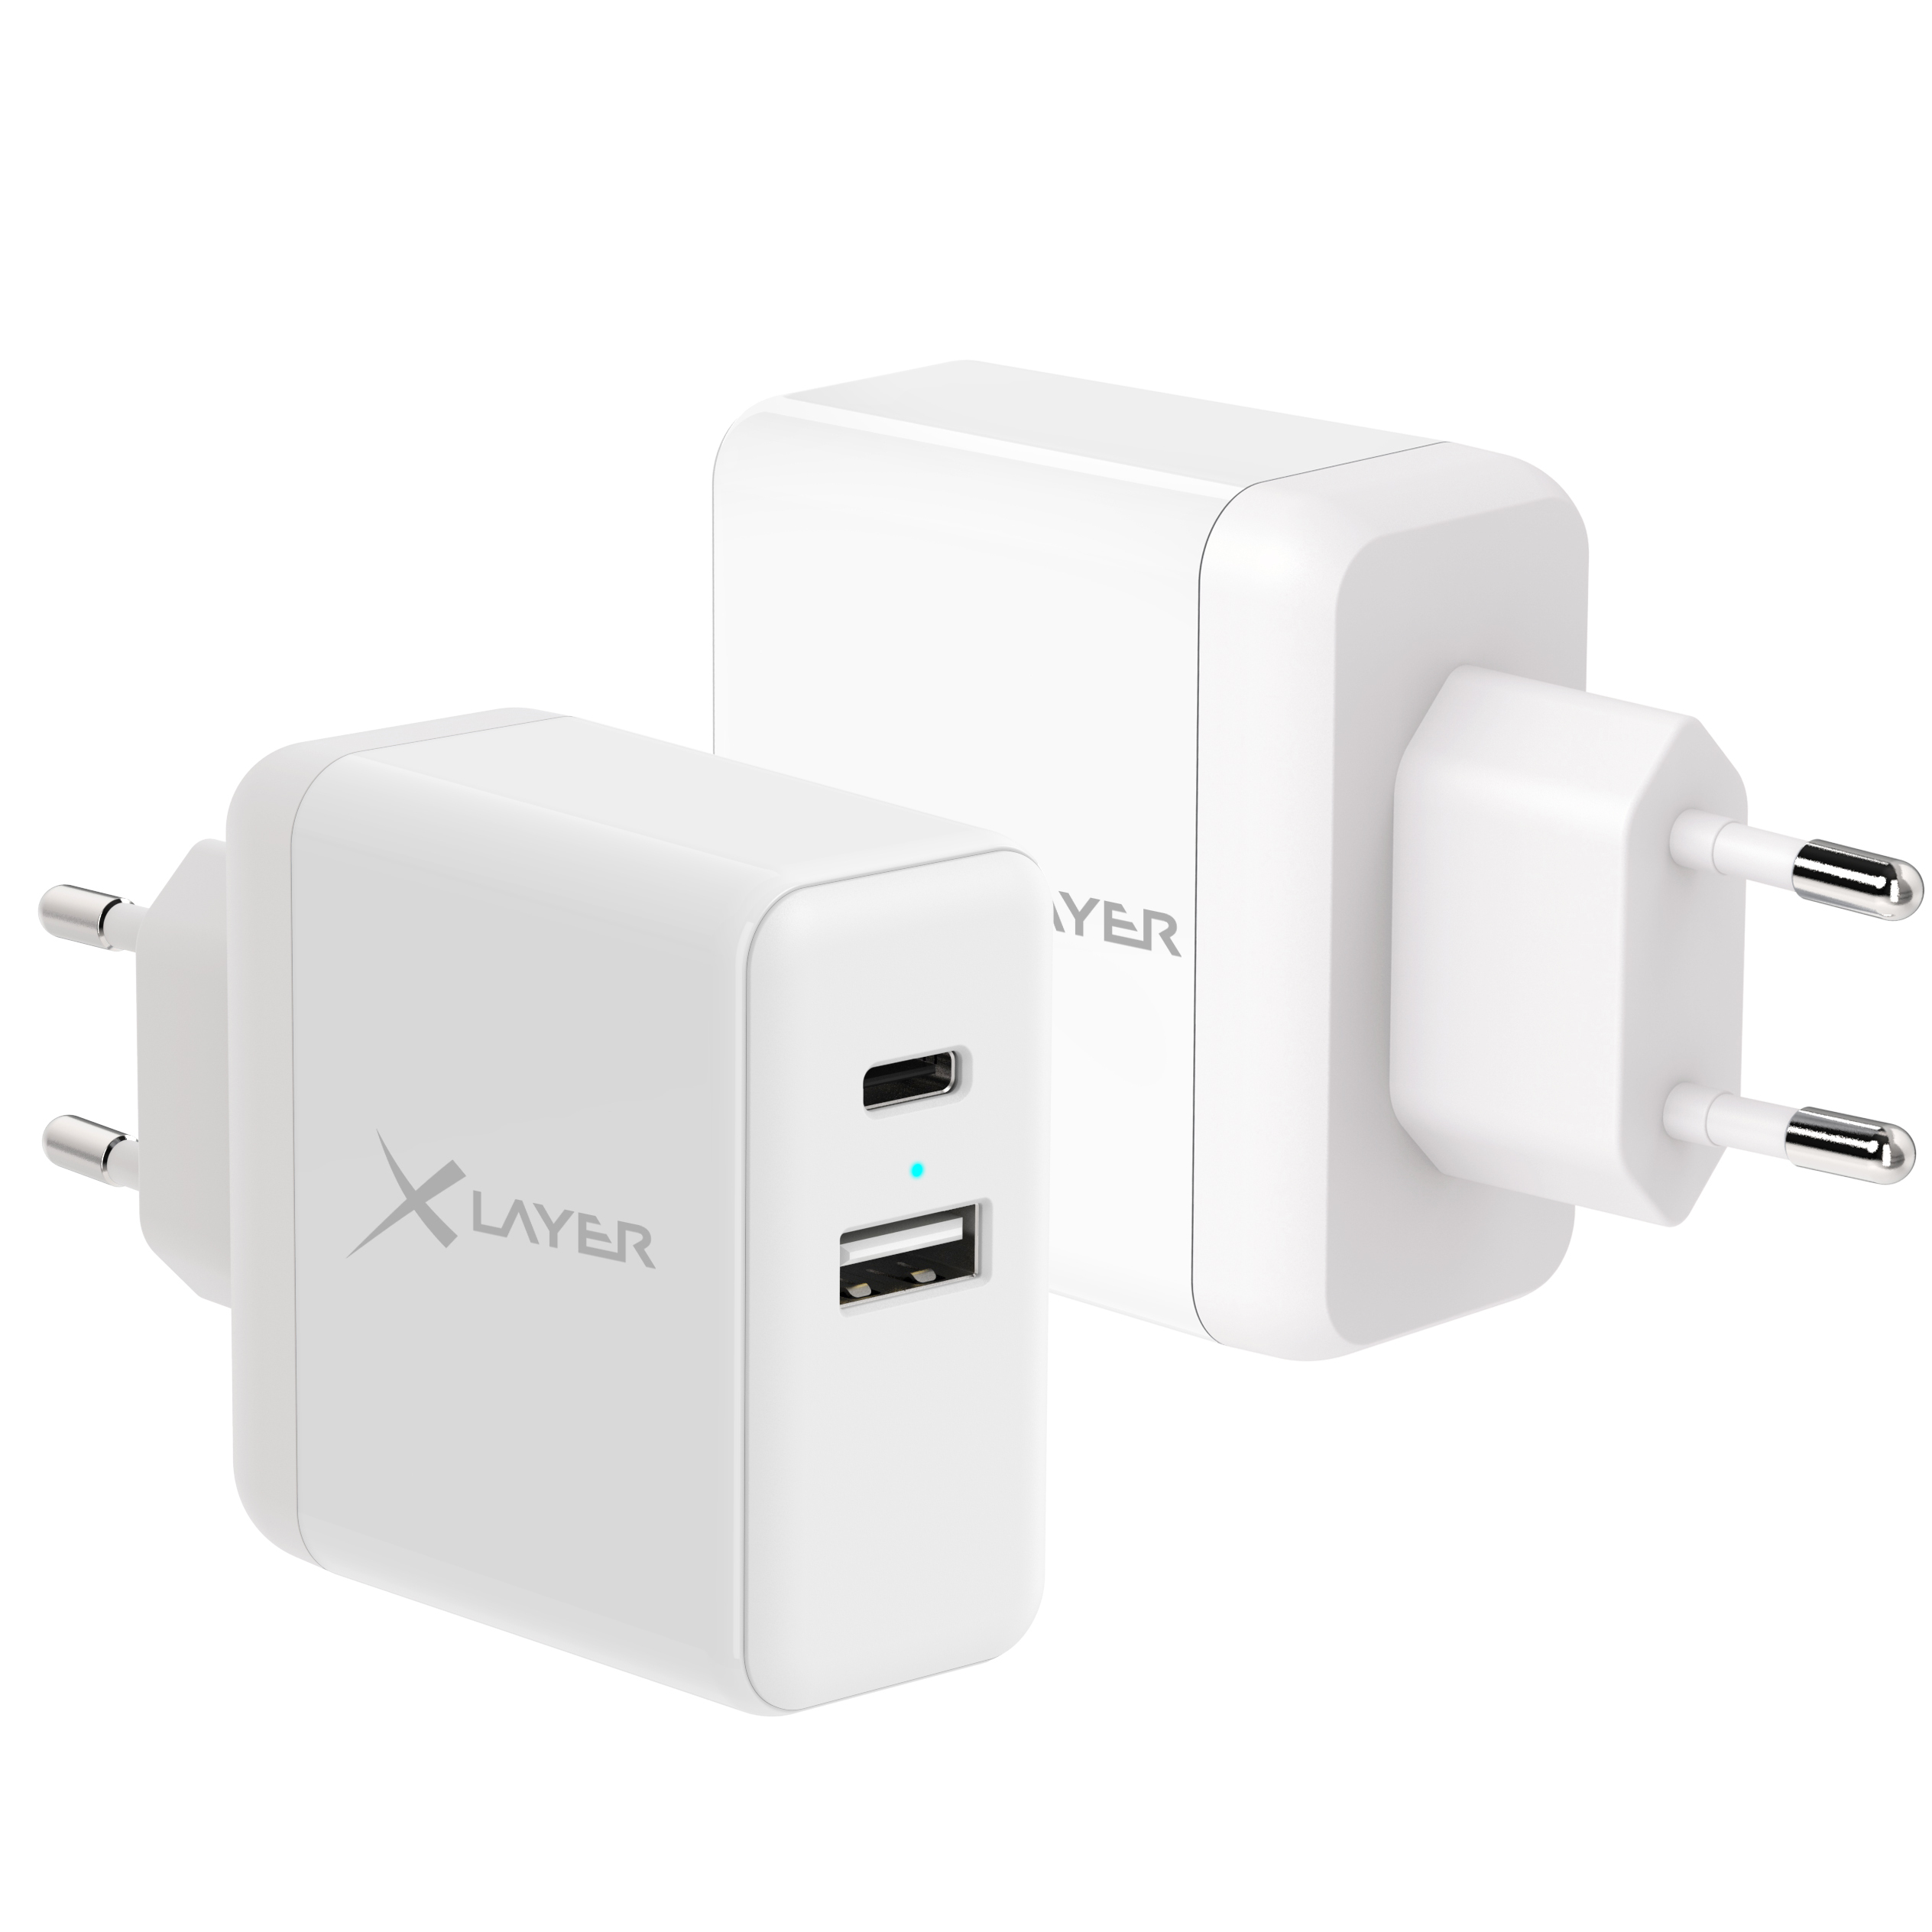 Xlayer Ladegerät XLayer USB QC3.0 + 5V/2.4A